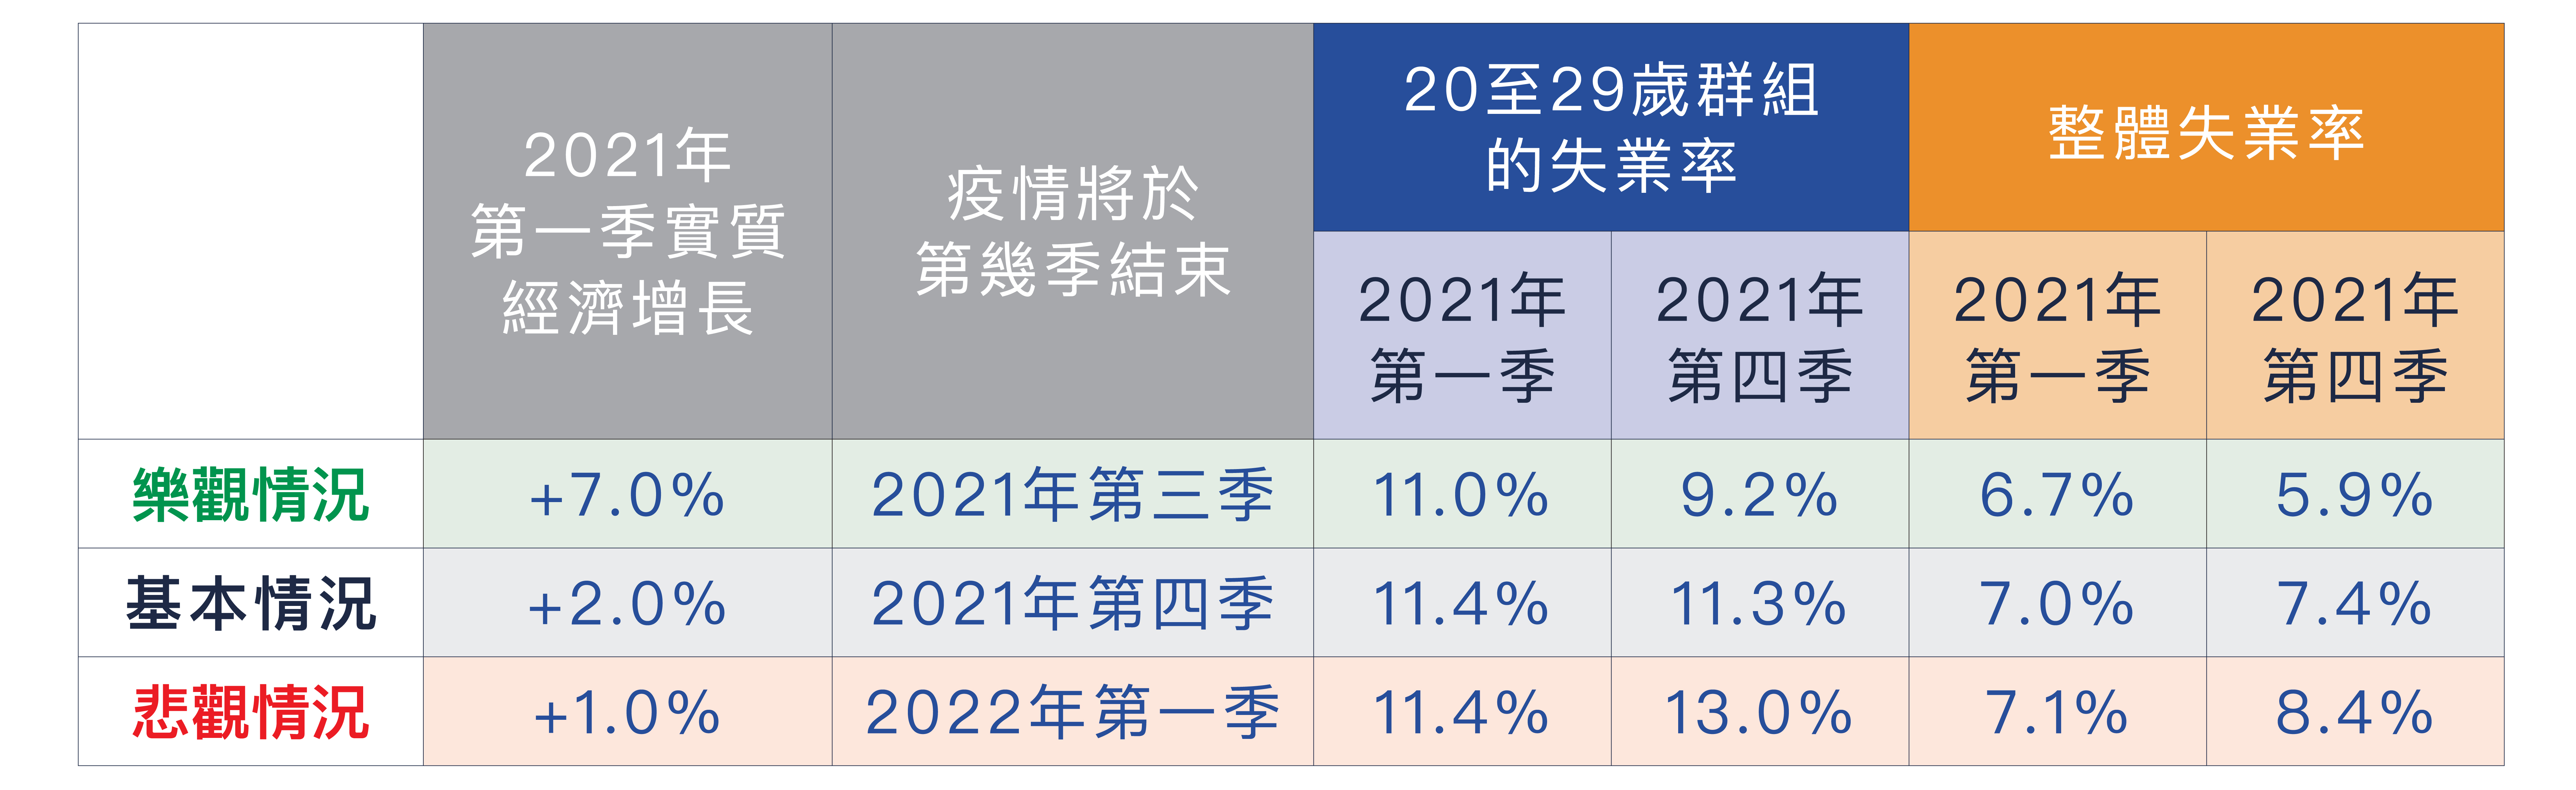 2021年20至29歲群組的失業率和整體失業率預測